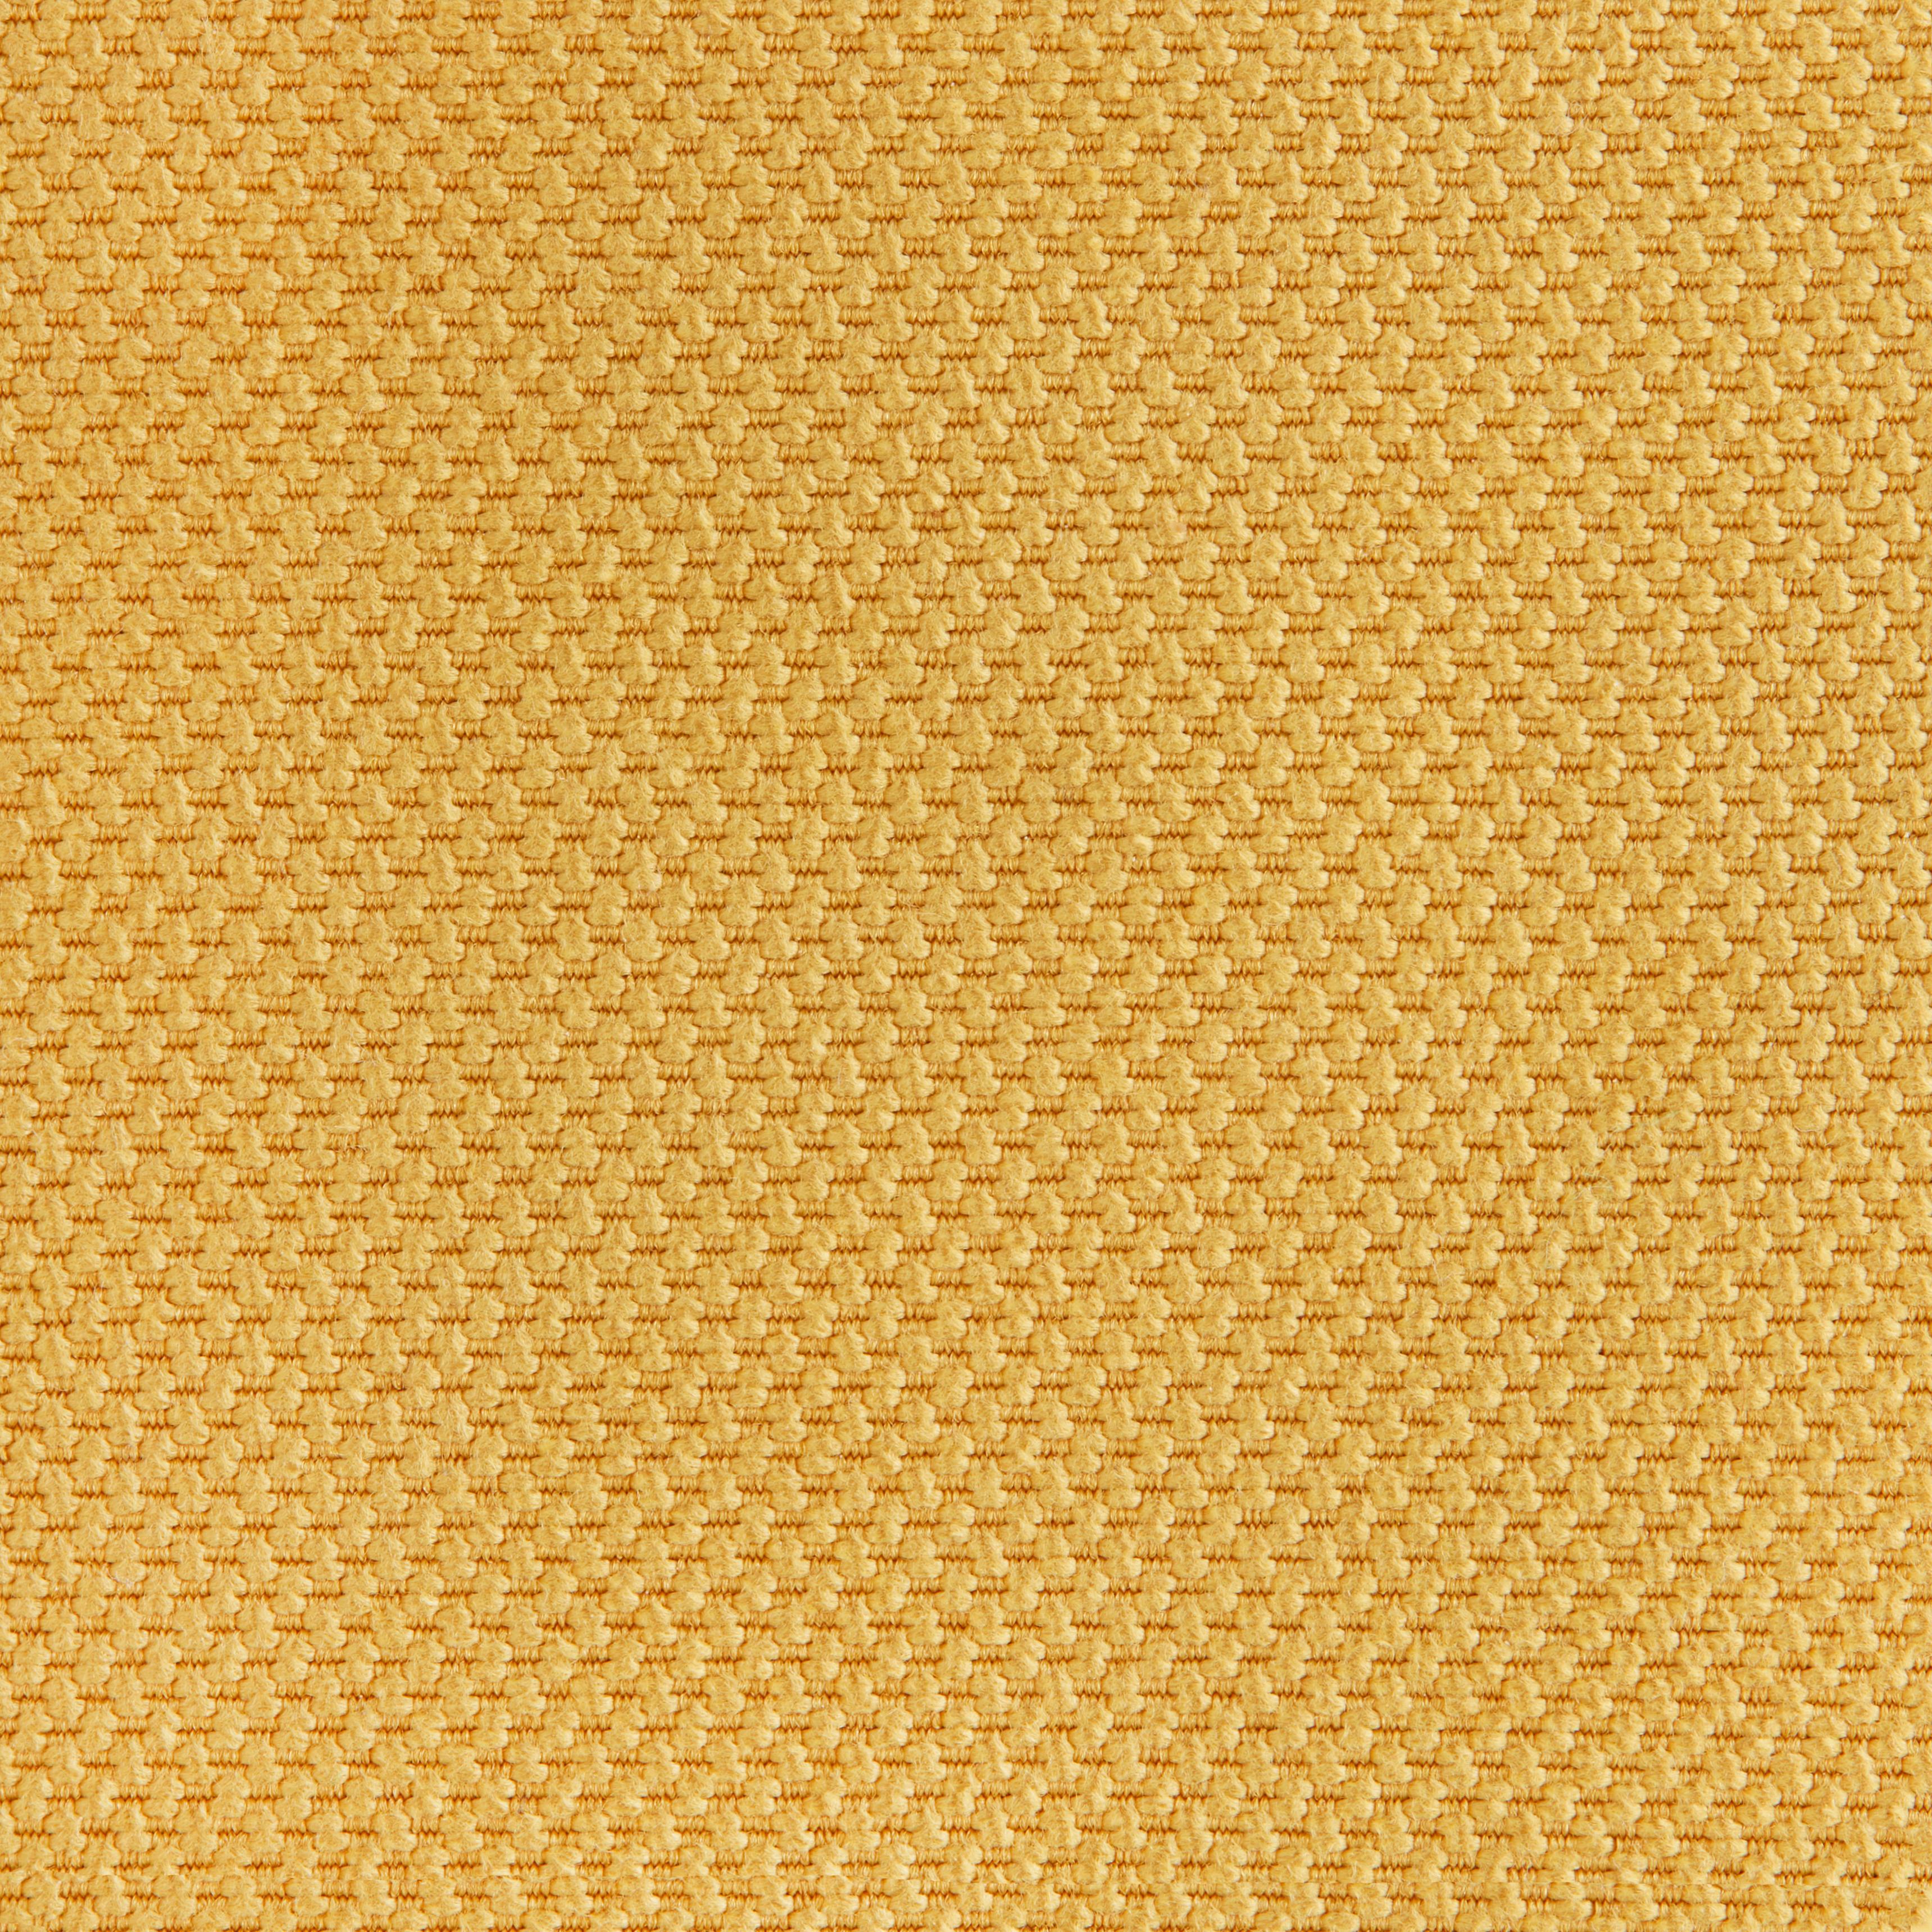 Zierkissen Felix in Gelb ca. 45x45cm - Gelb, KONVENTIONELL, Textil (45/45cm) - Modern Living